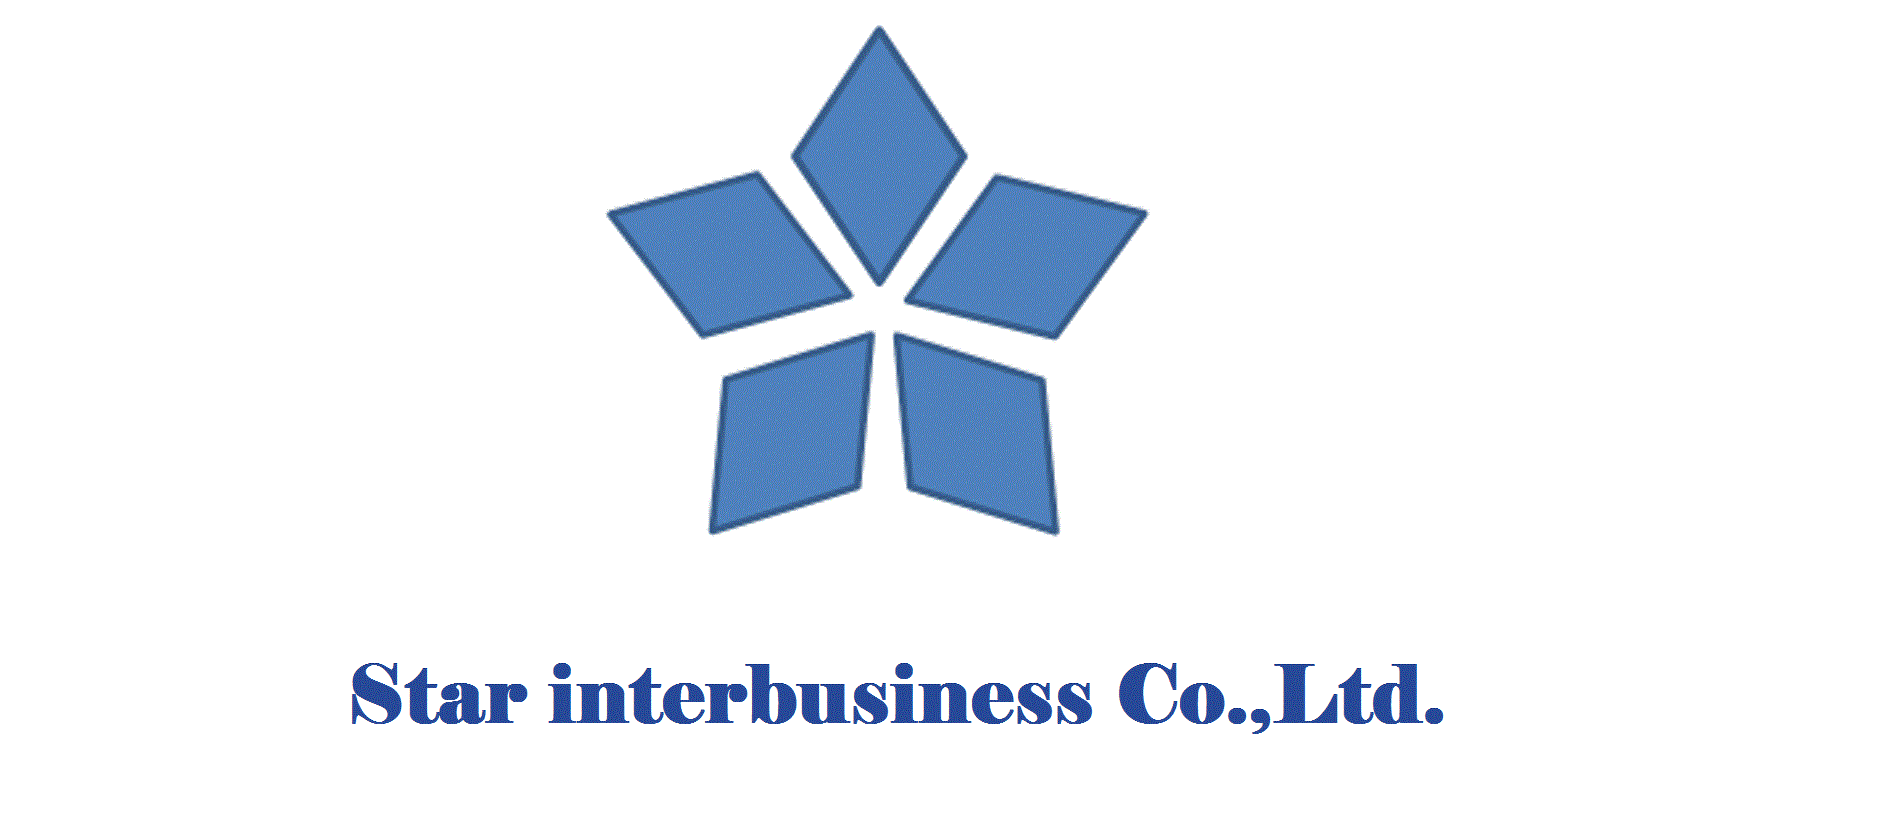 Star Interbusiness Co., Ltd.